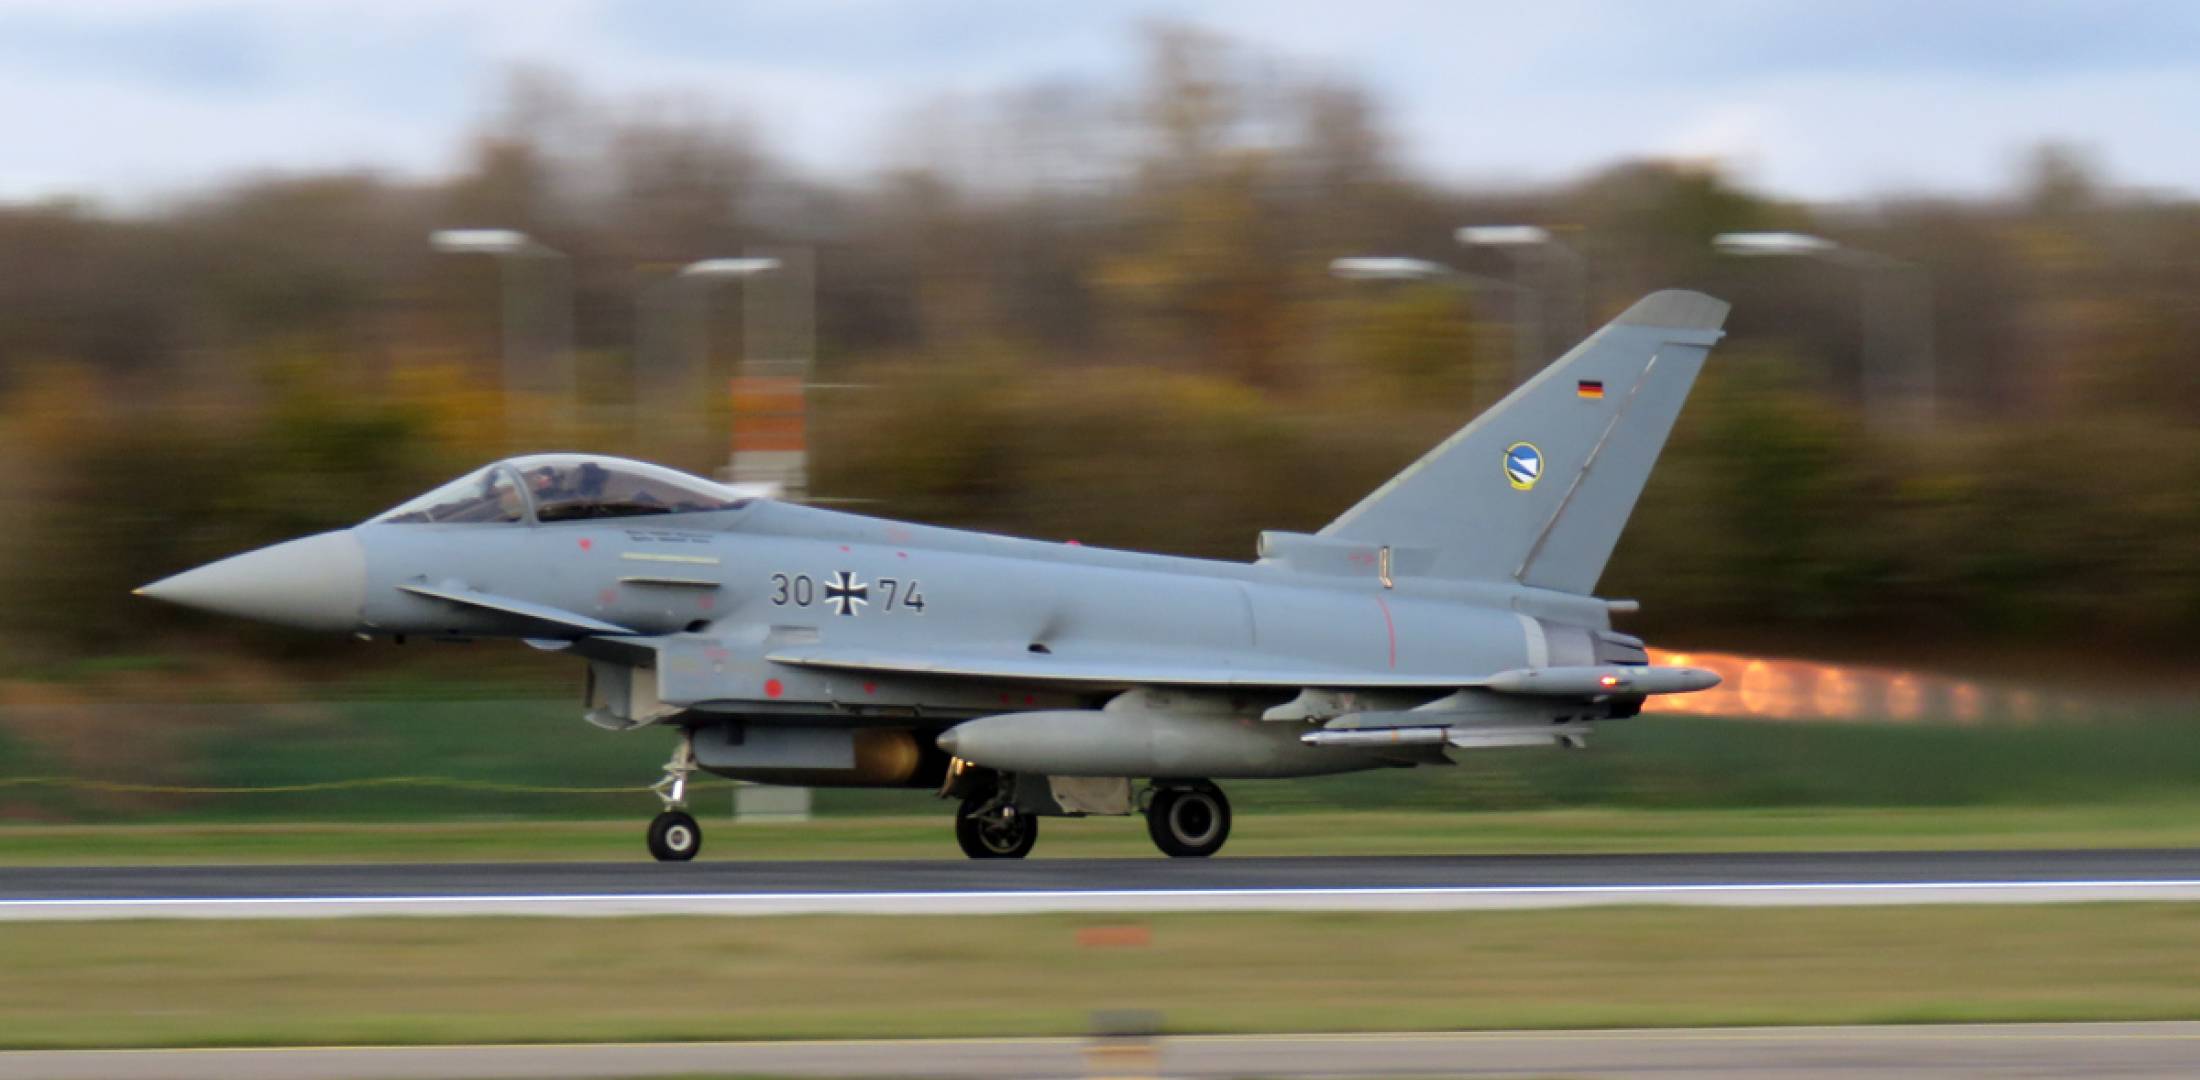 L'Allemagne transfère trois chasseurs Eurofighter Typhoon à l'Autriche